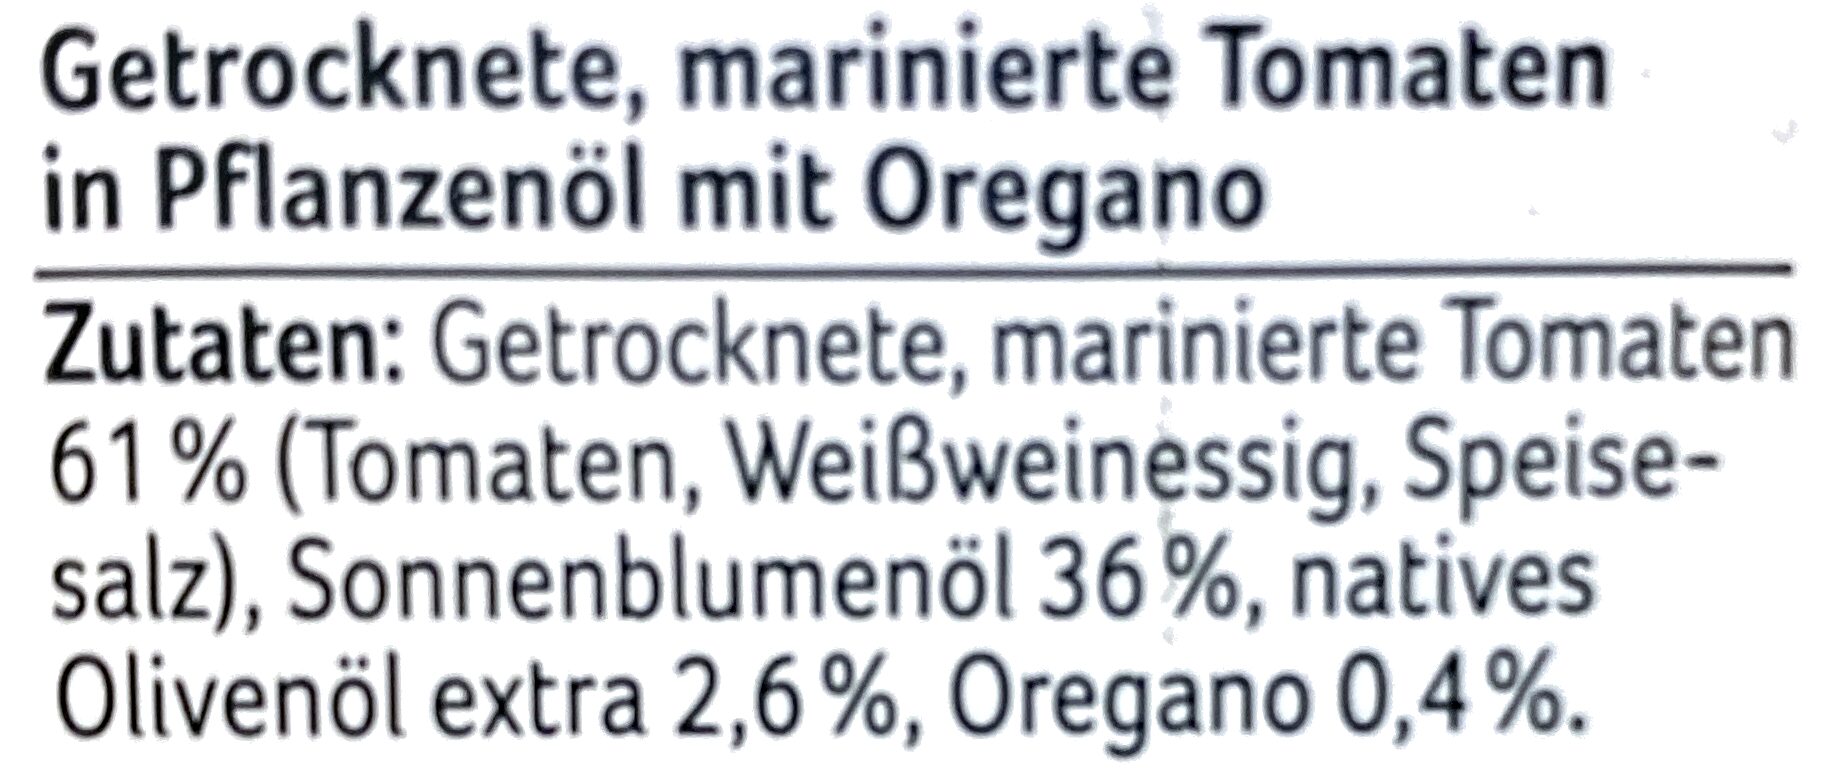 Getrocknete Tomaten in Öl mit Oregano - Zutaten